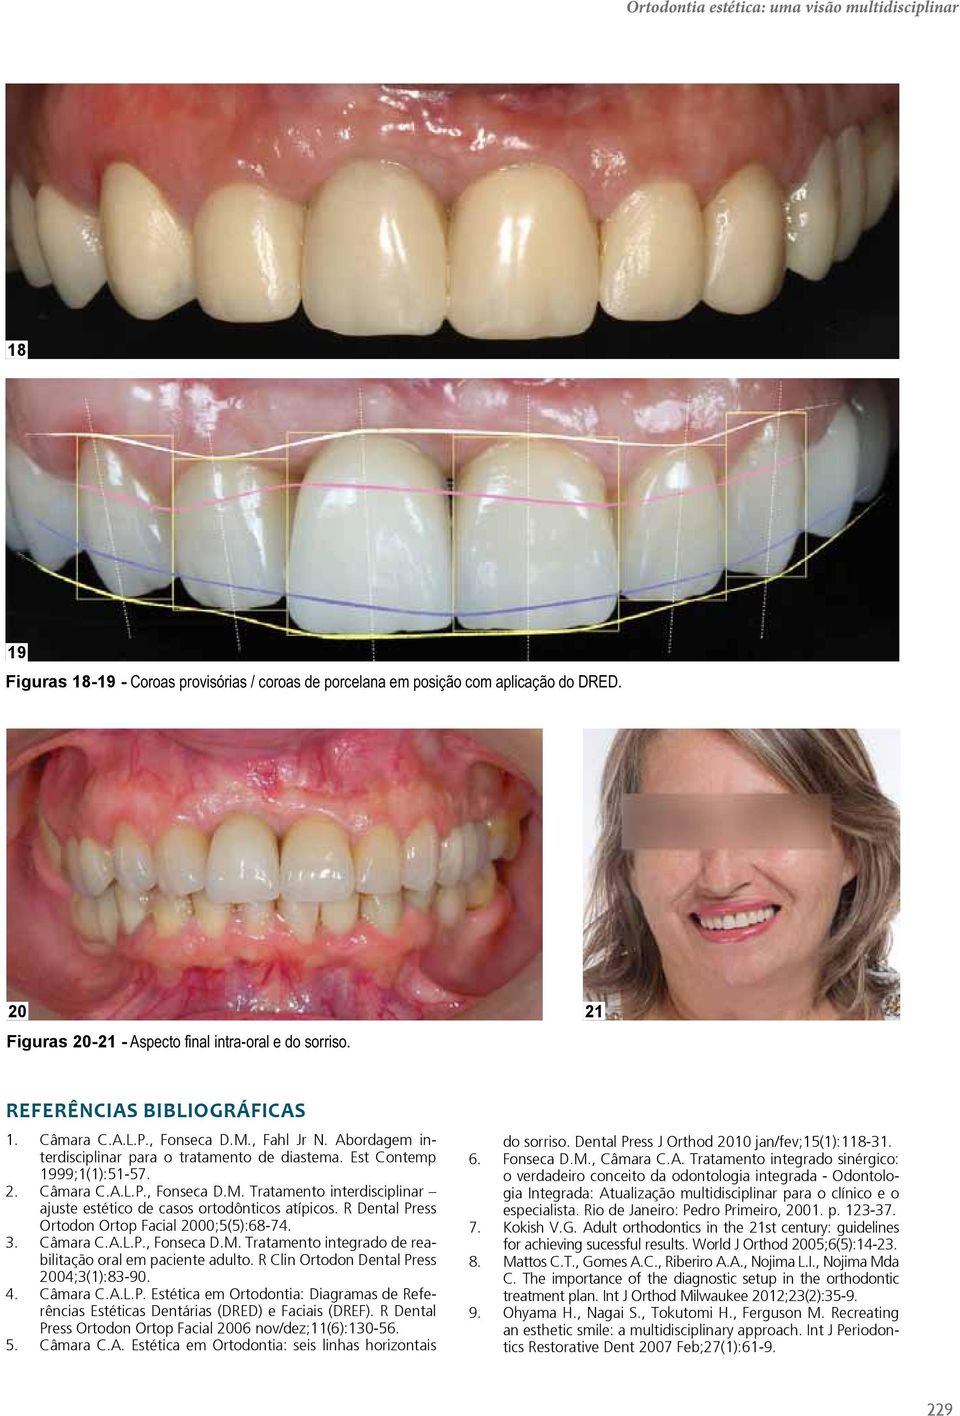 Est Contemp 1999;1(1):51-57. 2. Câmara C.A.L.P., Fonseca D.M. Tratamento interdisciplinar ajuste estético de casos ortodônticos atípicos. R Dental Press Ortodon Ortop Facial 2000;5(5):68-74. 3.